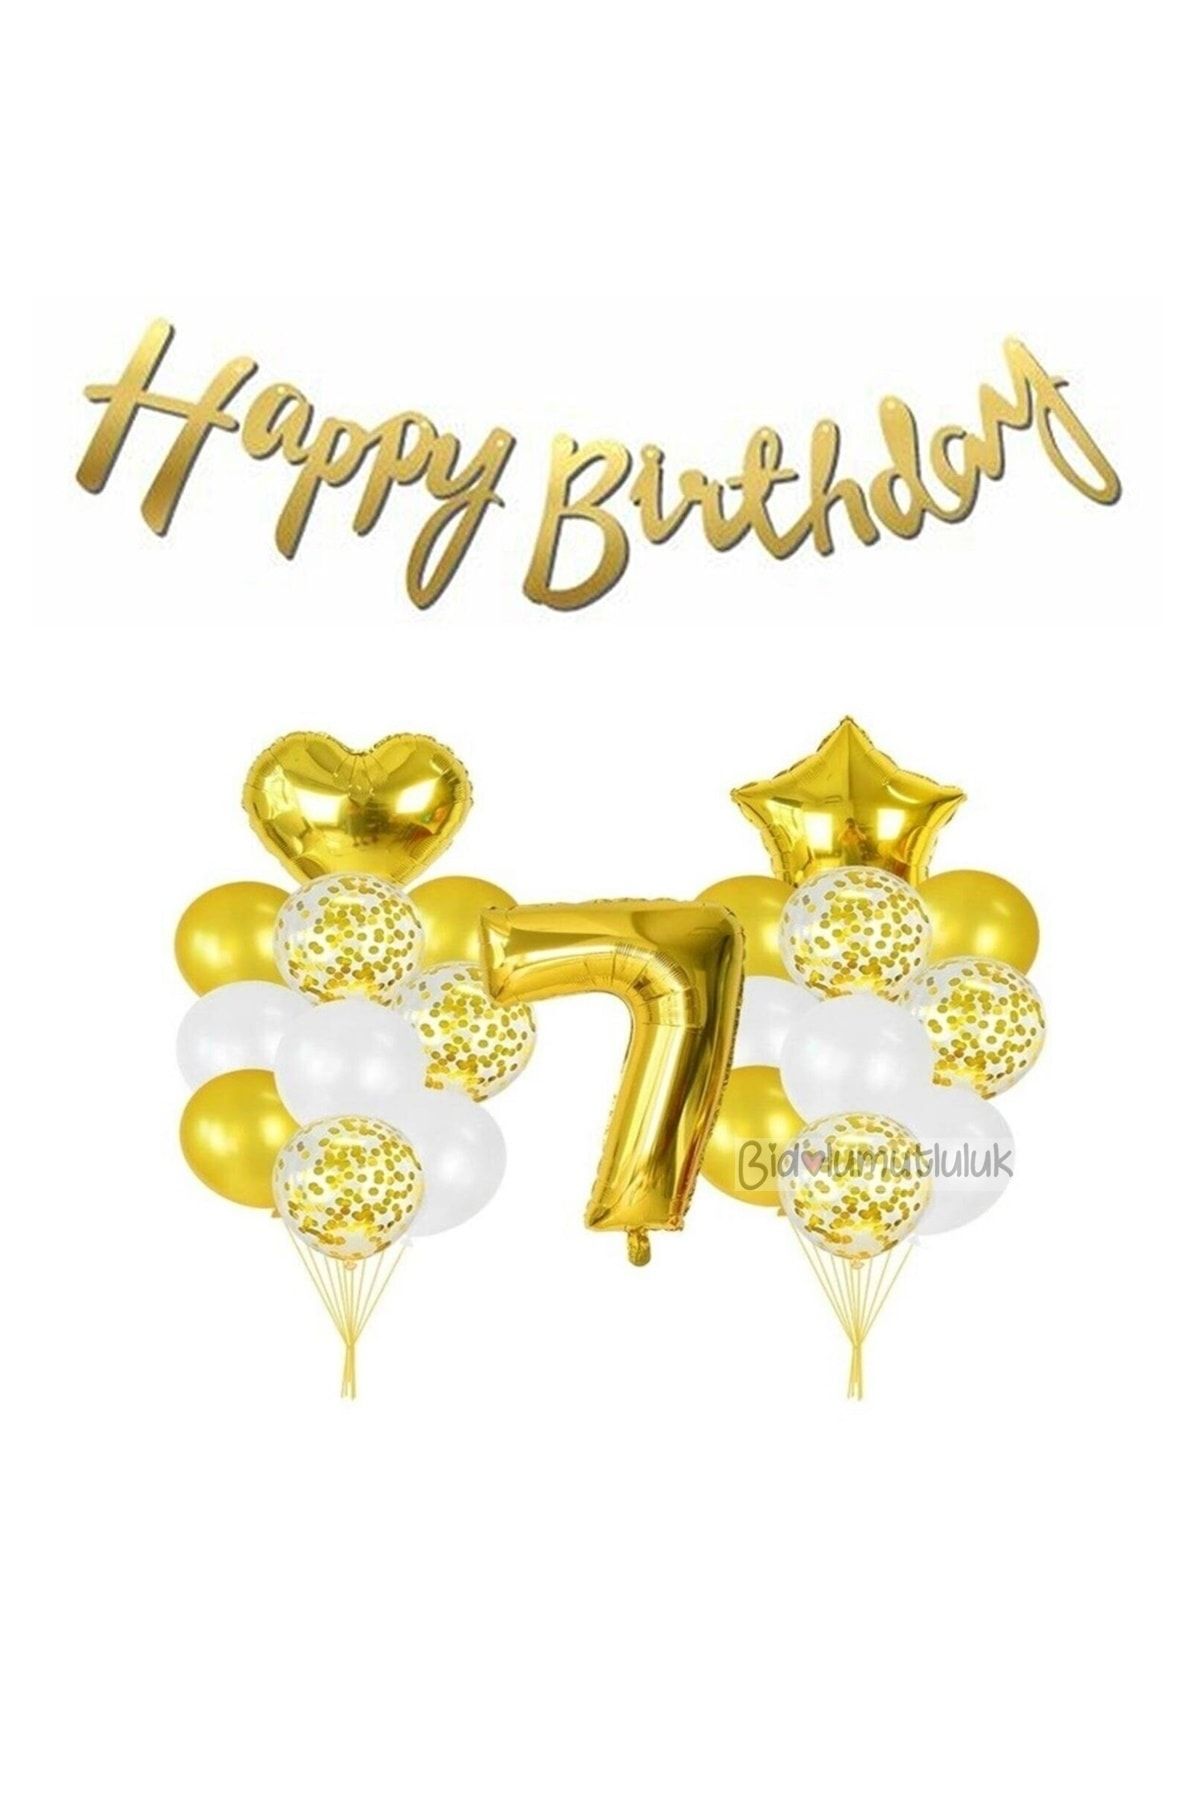 BİDOLUMUTLULUK Yaş Gold Folyo Balon Şeffaf Balon Seti Doğum Günü Parti Seti